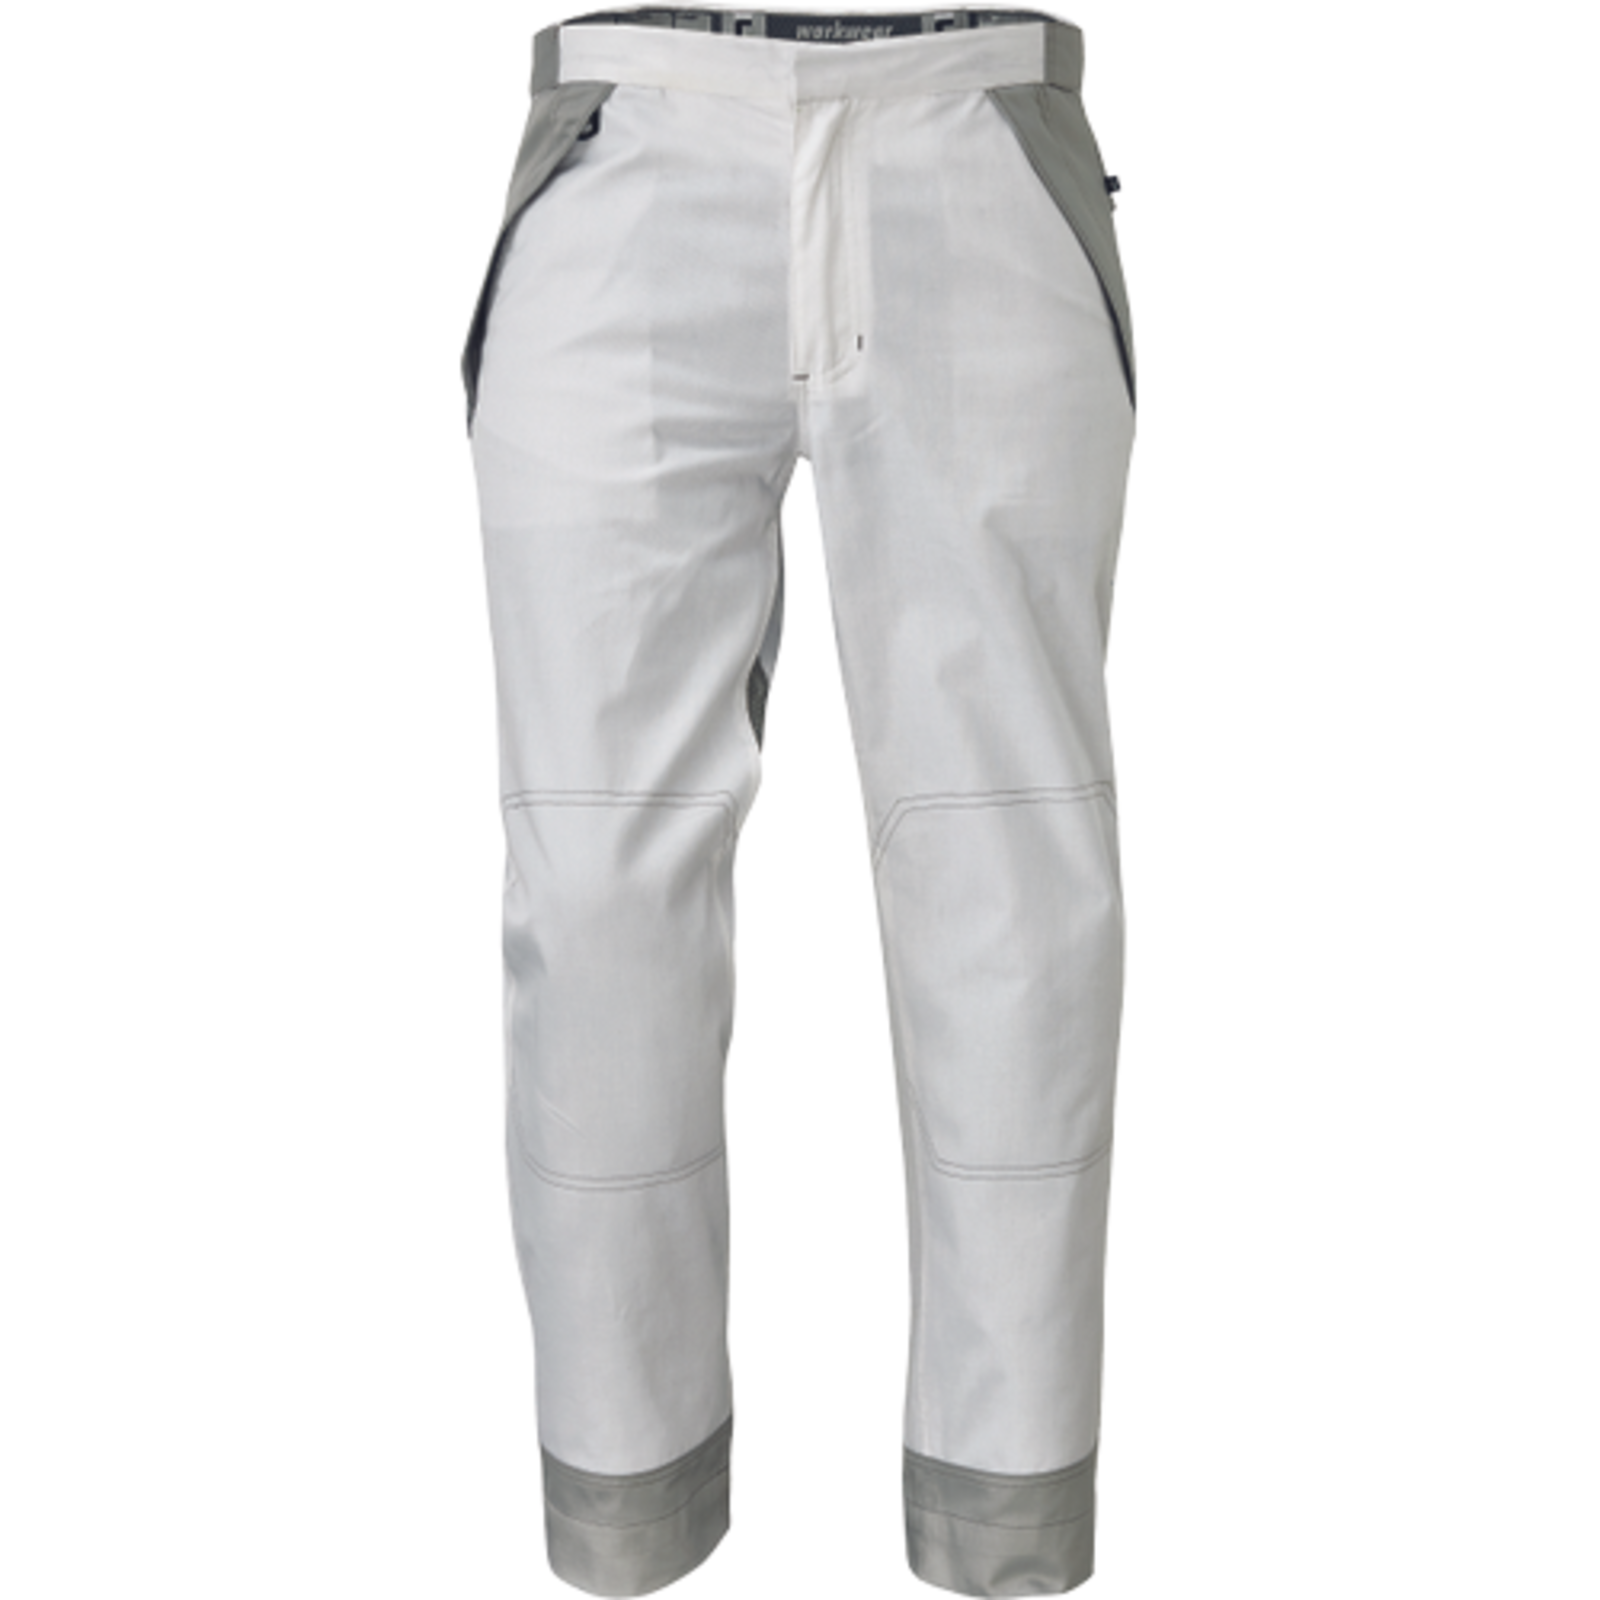 Pánske pracovné nohavice Cerva Montrose  - veľkosť: 46, farba: biela/sivá